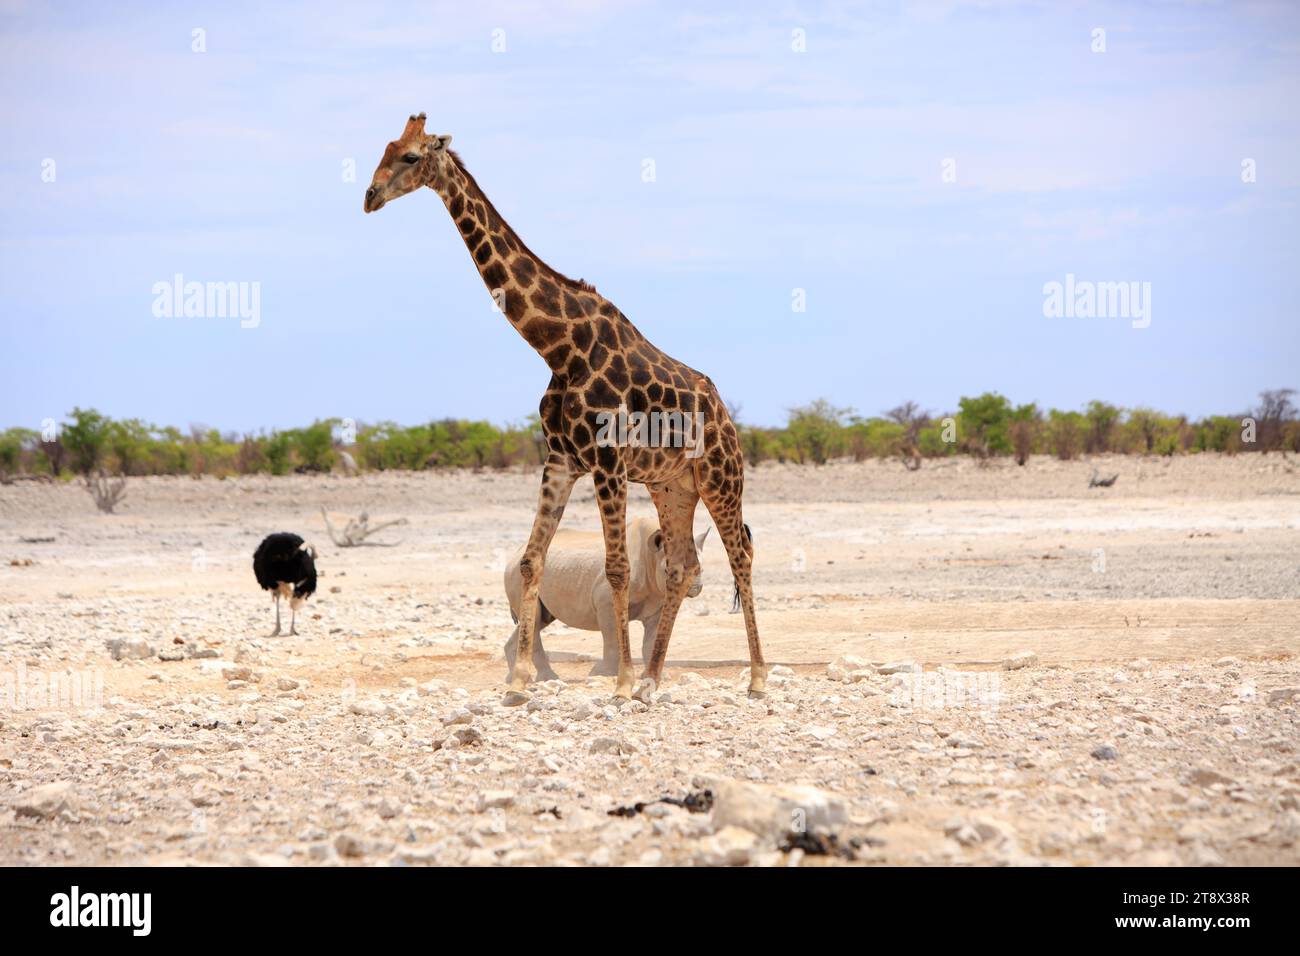 Rhinocéros noir et autruche mâle noire sur la savane africaine avec une grande girafe adulte dans le Forround - Etoshaa Nationa ; Parc, Namibie, Afrique Banque D'Images